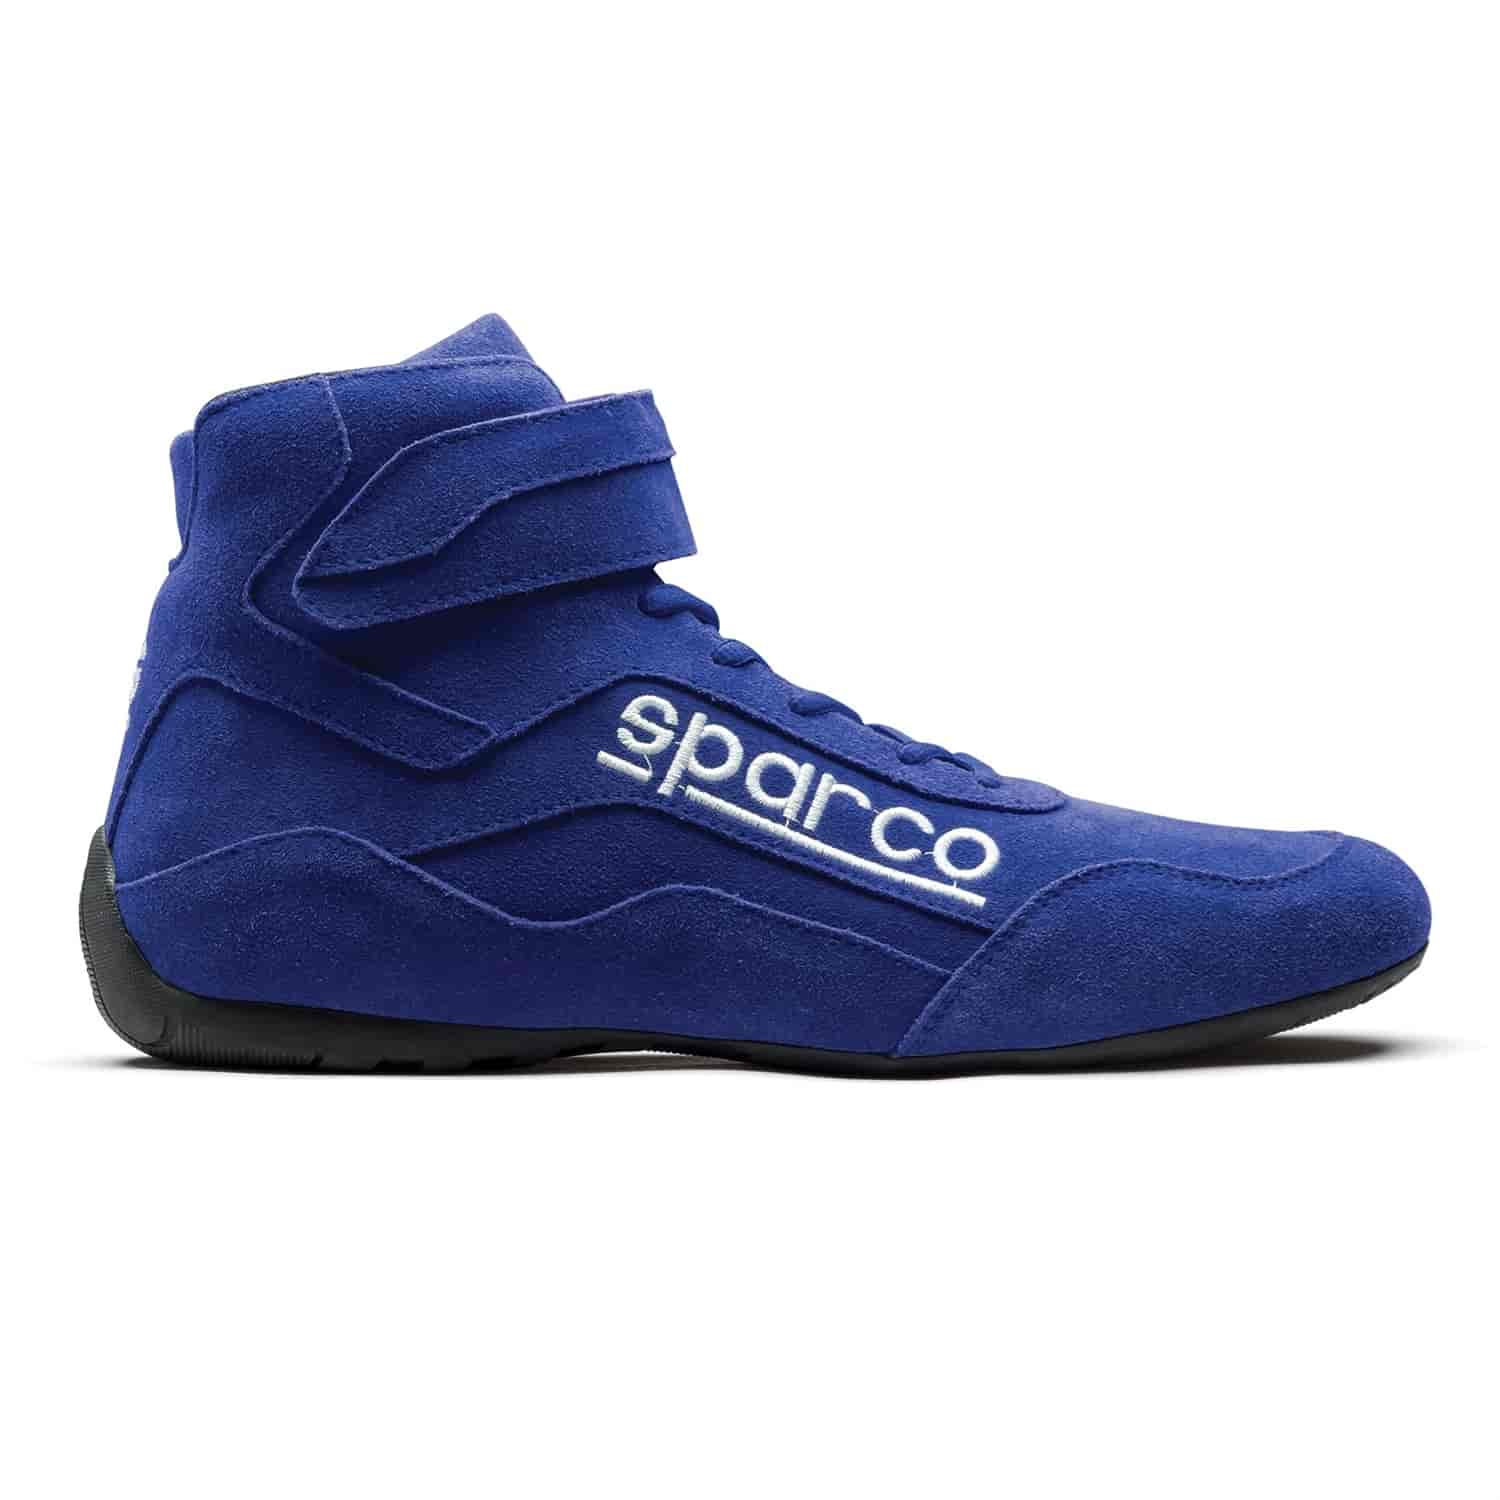 Race 2 Shoe Size 9 - Blue